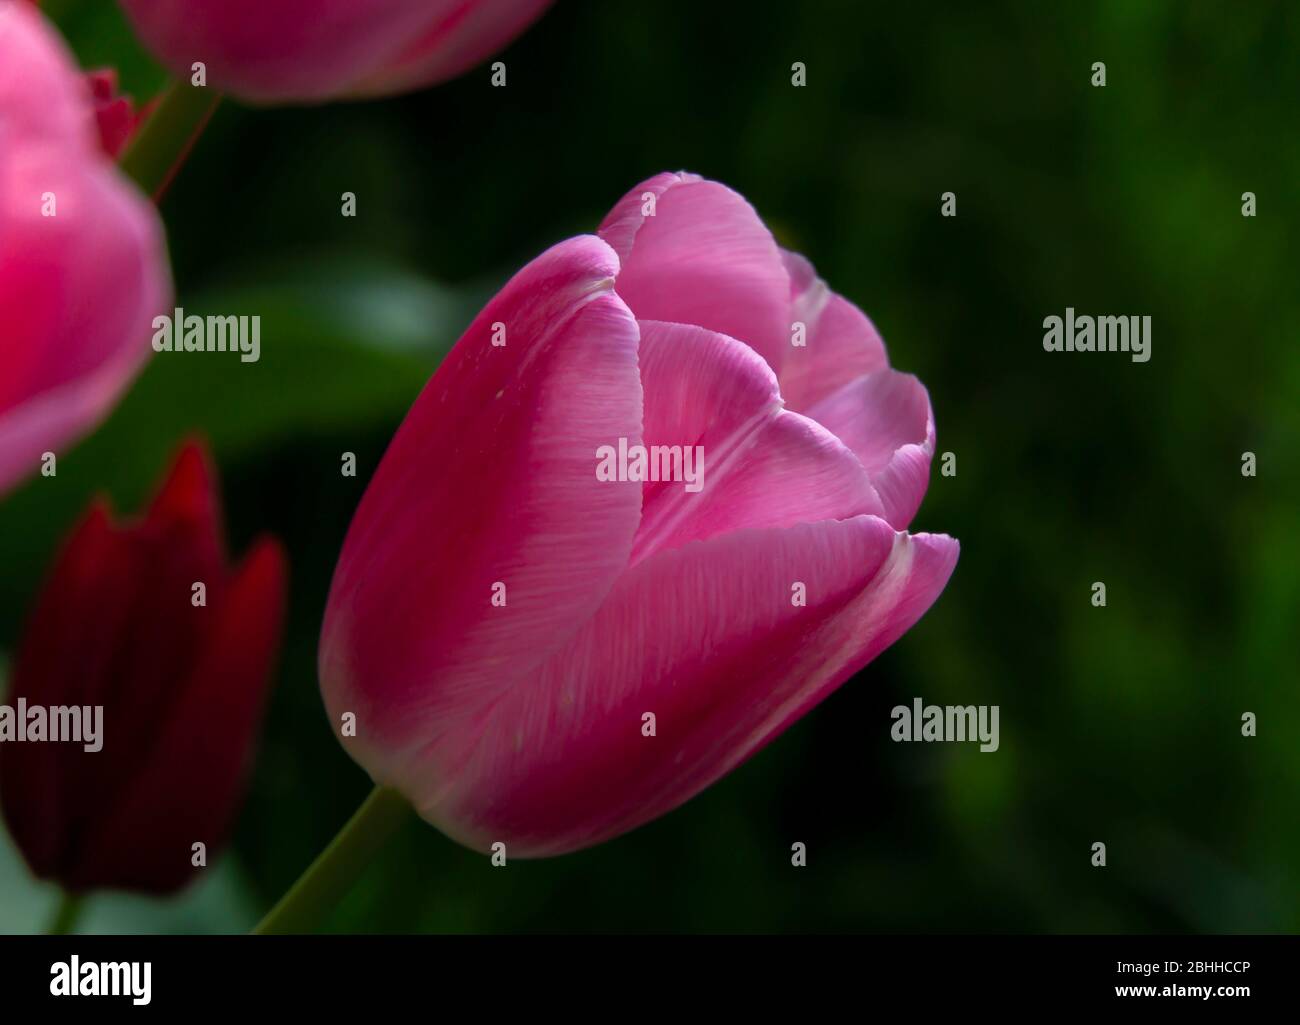 pink tulip close up Stock Photo